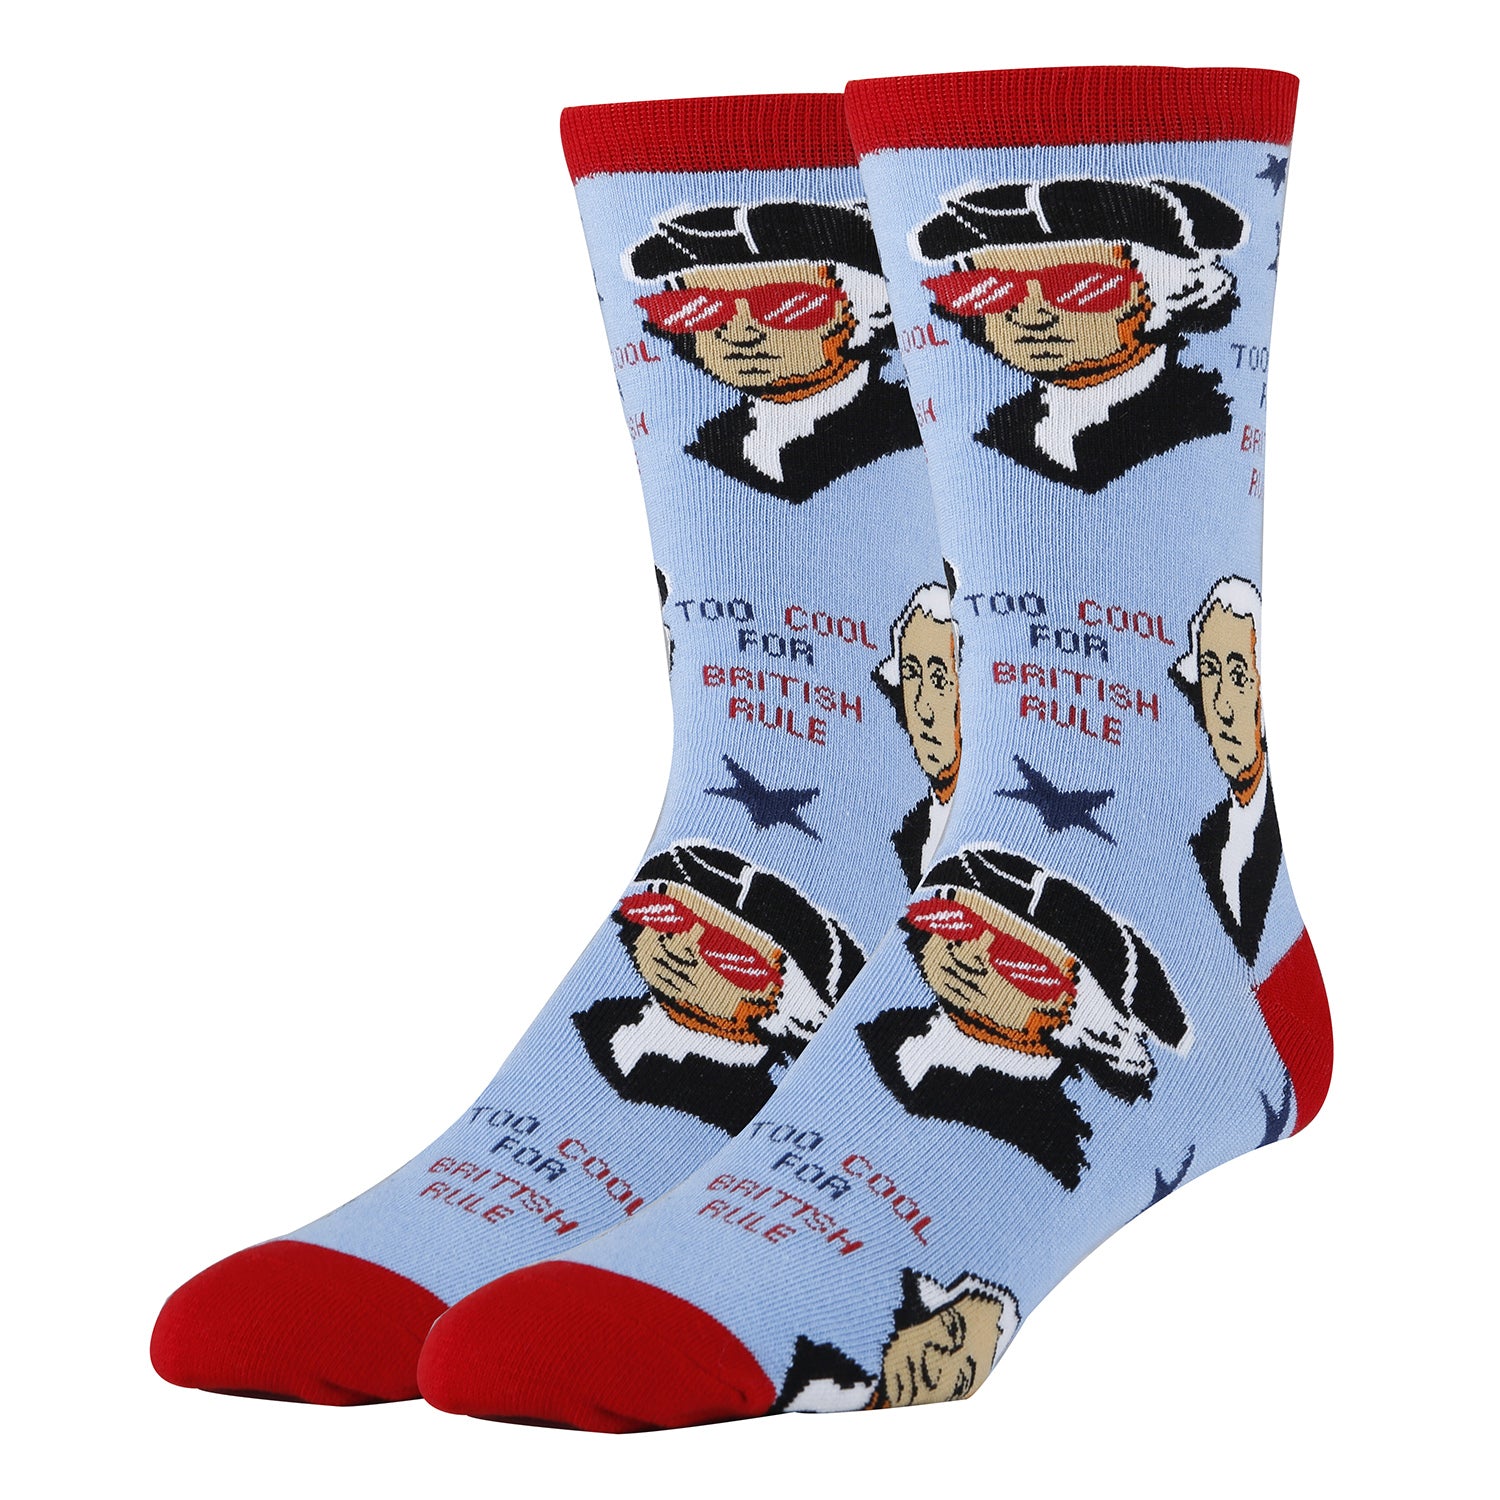 George Washington Socks | Novelty Crew Socks For Men